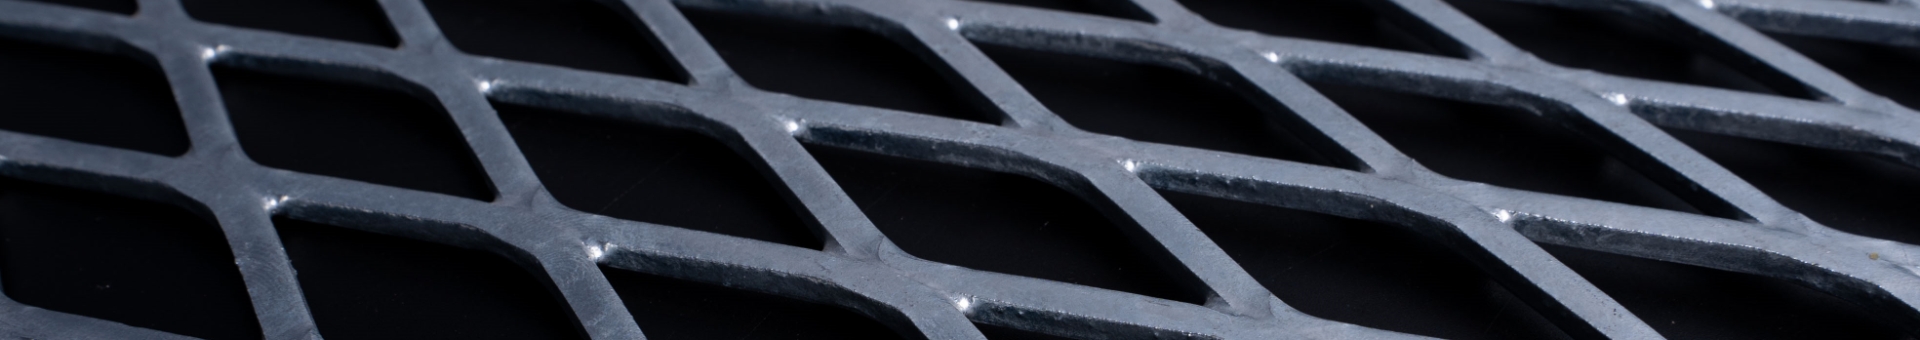 倾斜角度拍摄的碳钢材质的压平型钢板网产品。